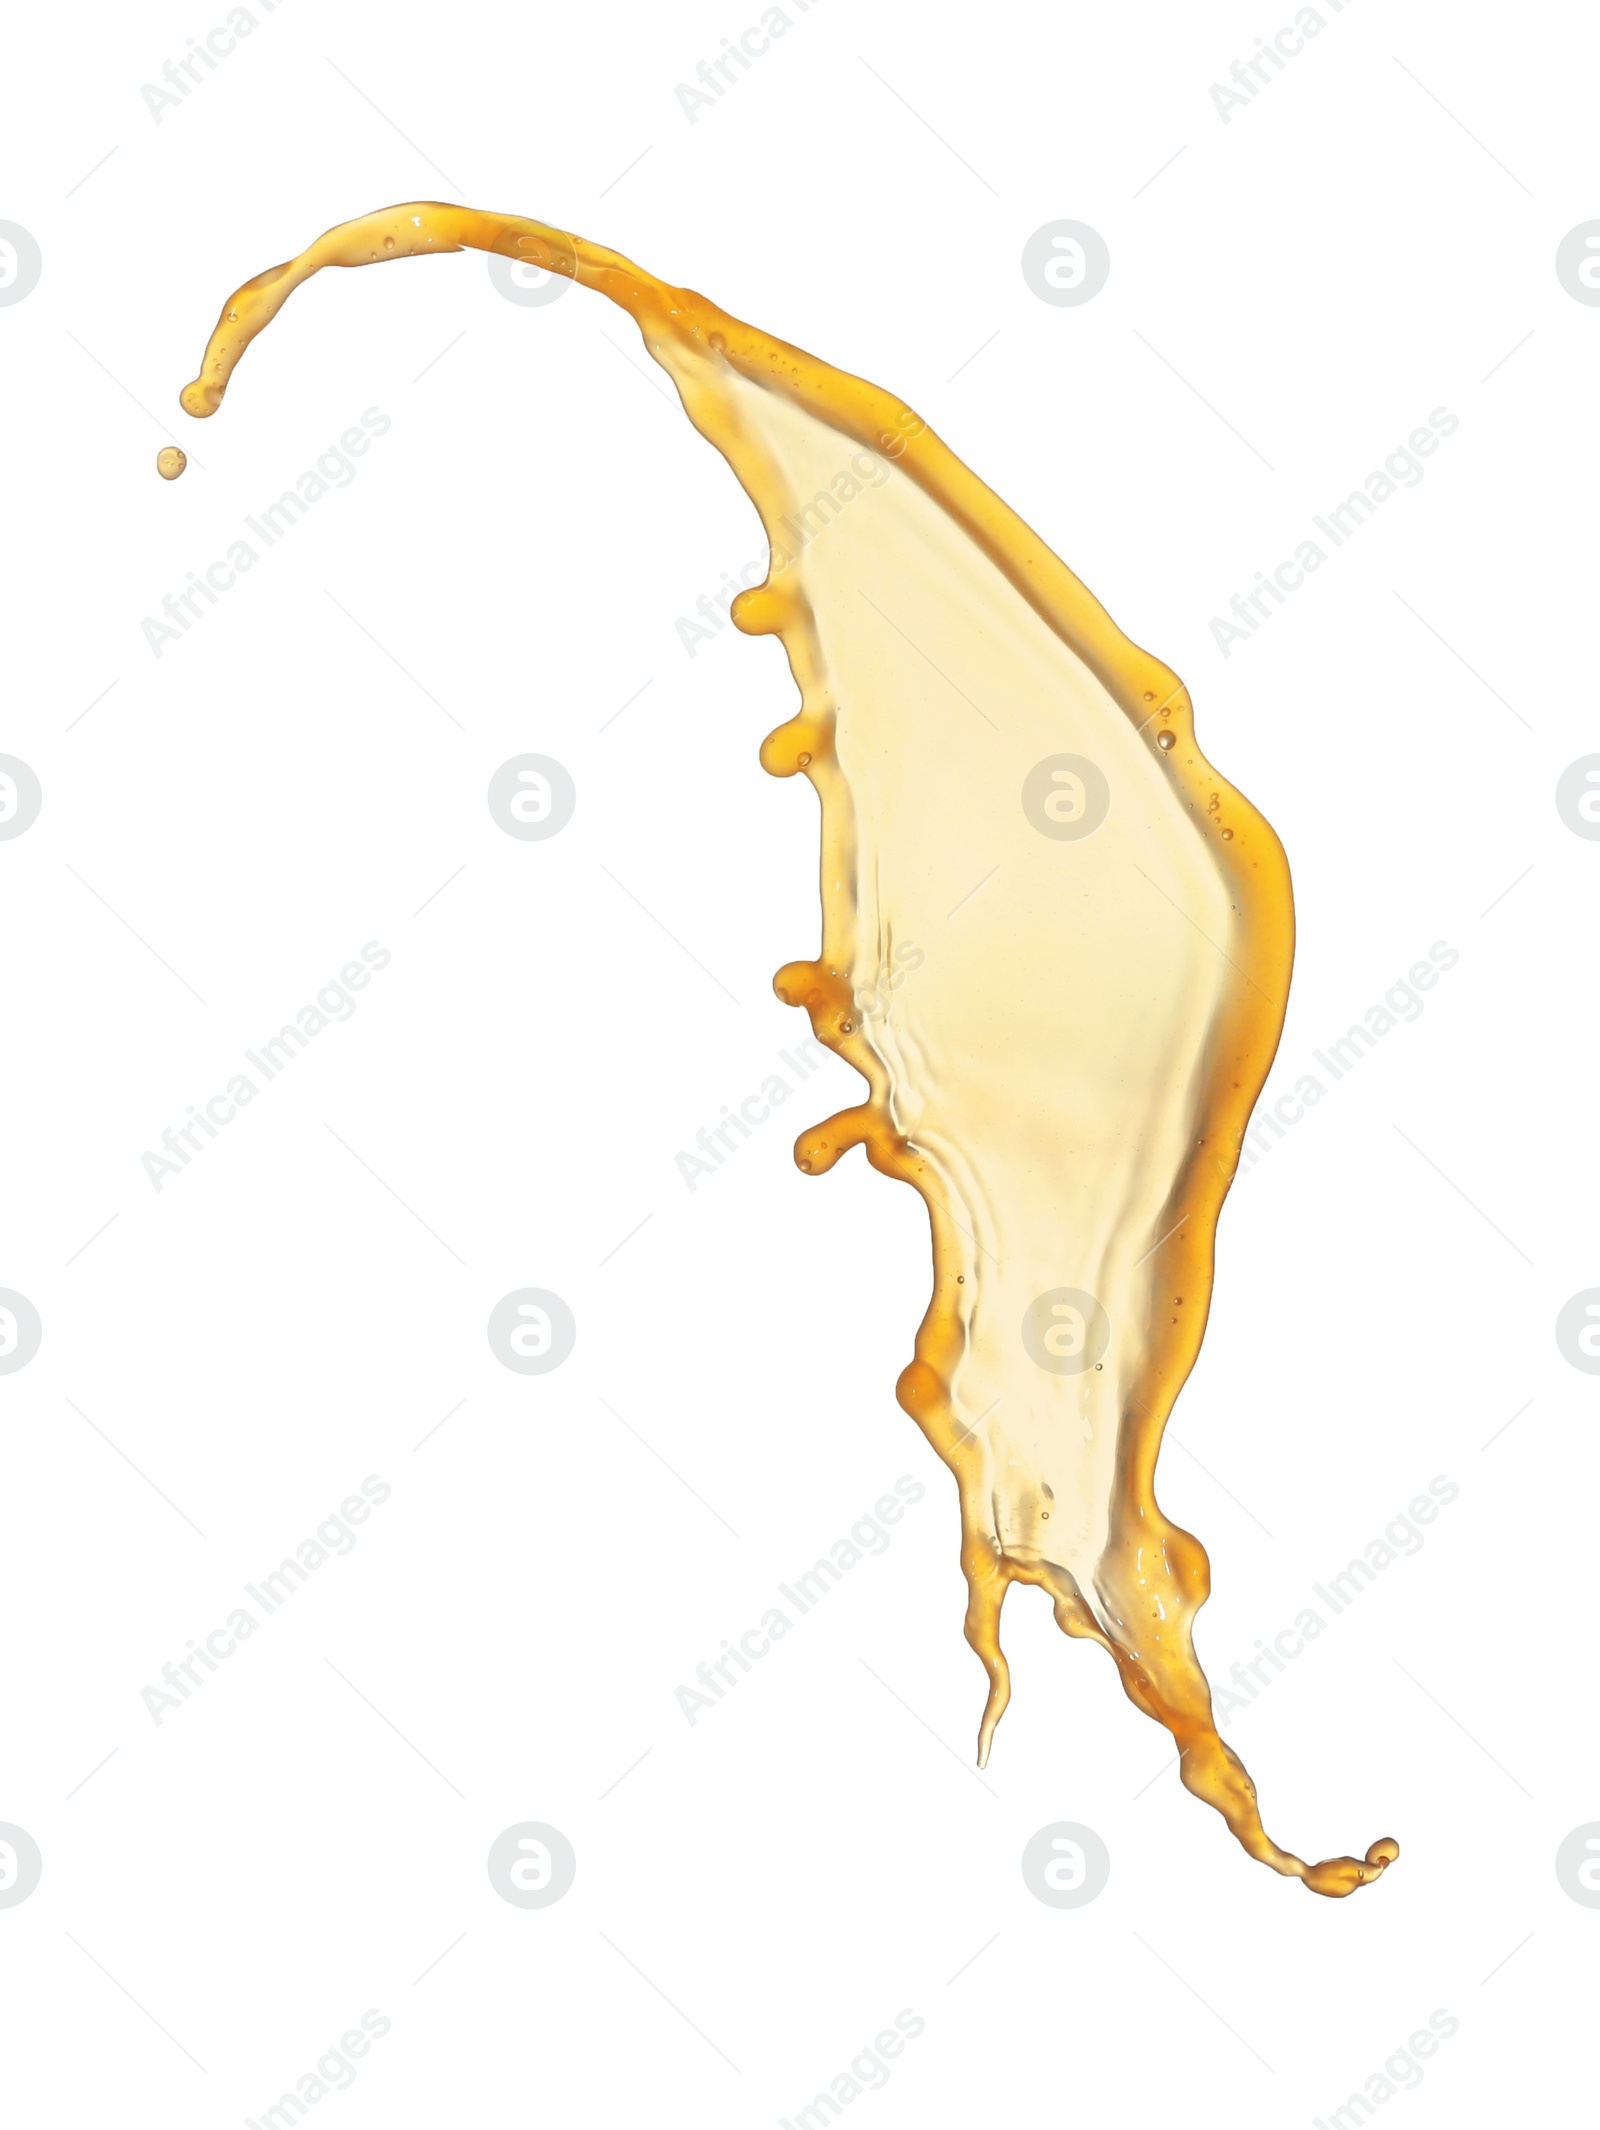 Photo of Splash of tasty fresh juice isolated on white